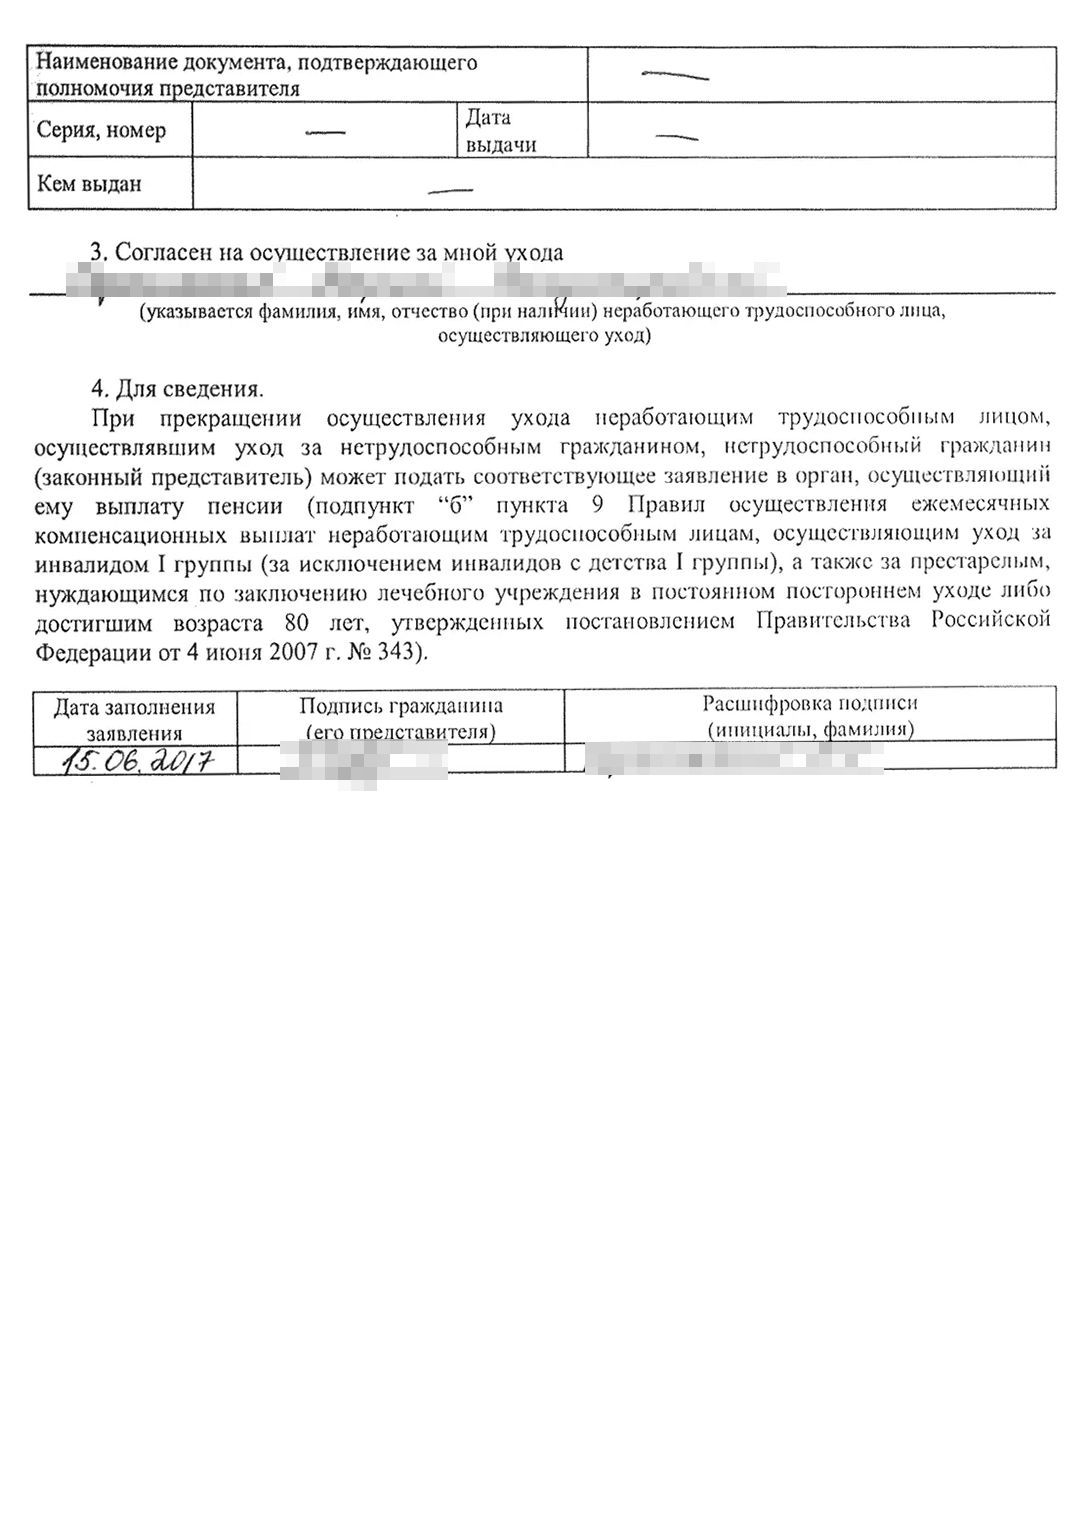 Проверка Пенсионного фонда России (ПФР) на возможность оказания помощи